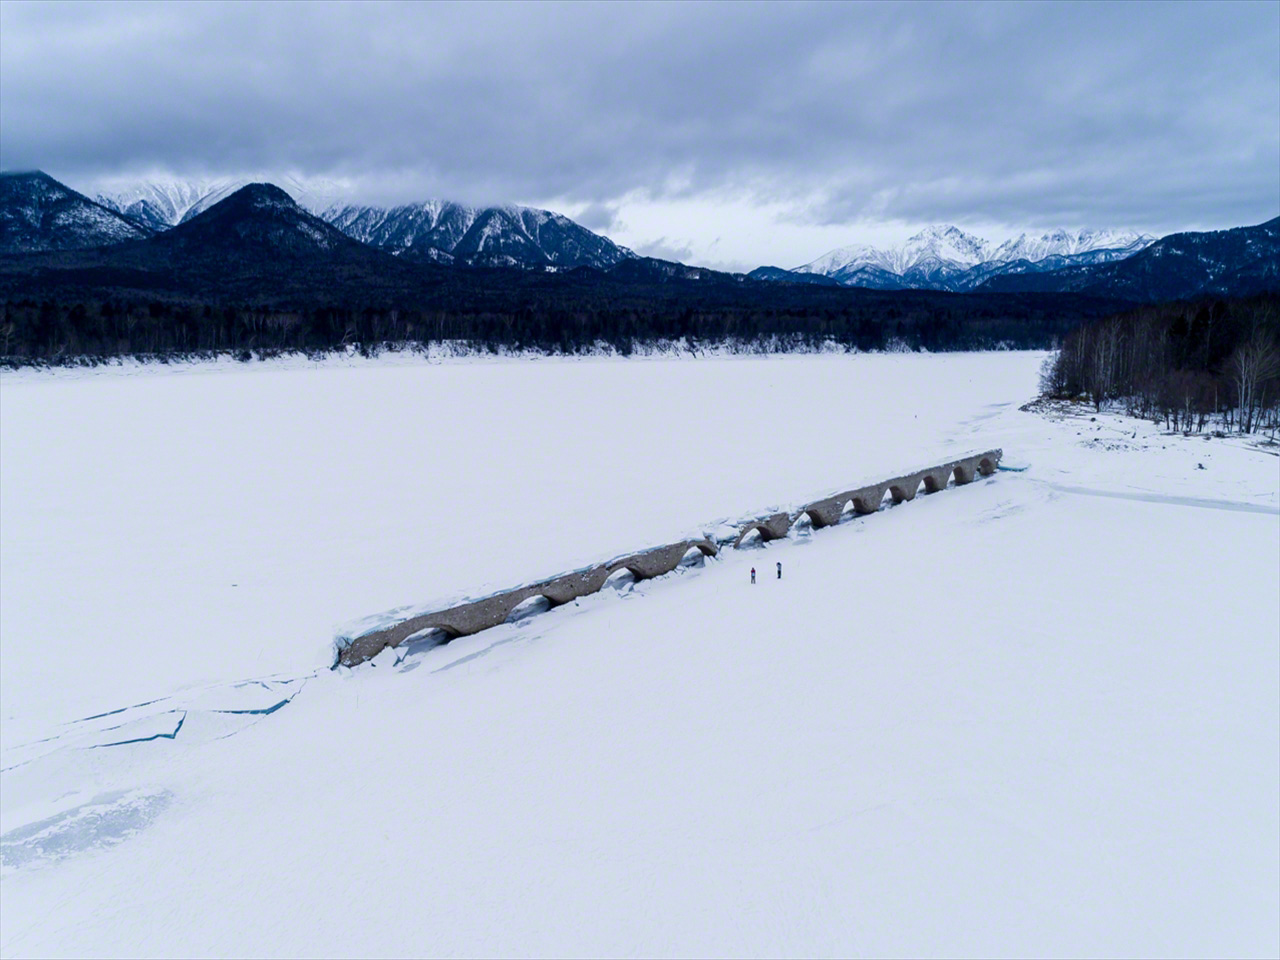 進入1月，環繞於東大雪山脈中的人工湖水位元下降，破冰而出的橋樑身影展現在眼前